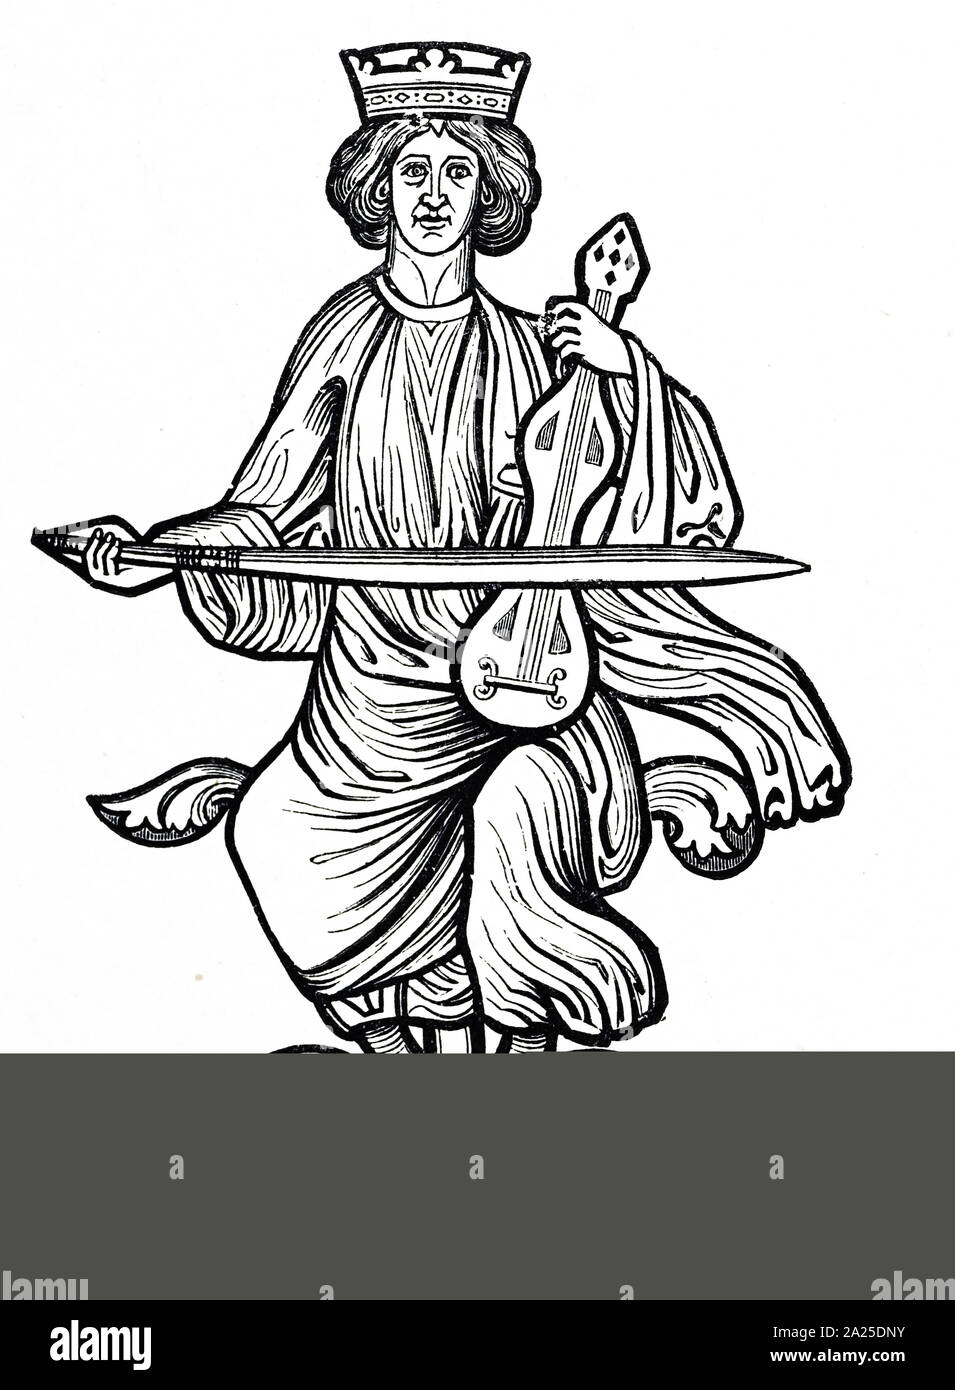 Grabado xilografía representando el Rey David mostrado jugando una rote, medieval, un instrumento de cuerda. Grabado después de detalle en una ventana del siglo 13. Fecha del siglo XIX Foto de stock